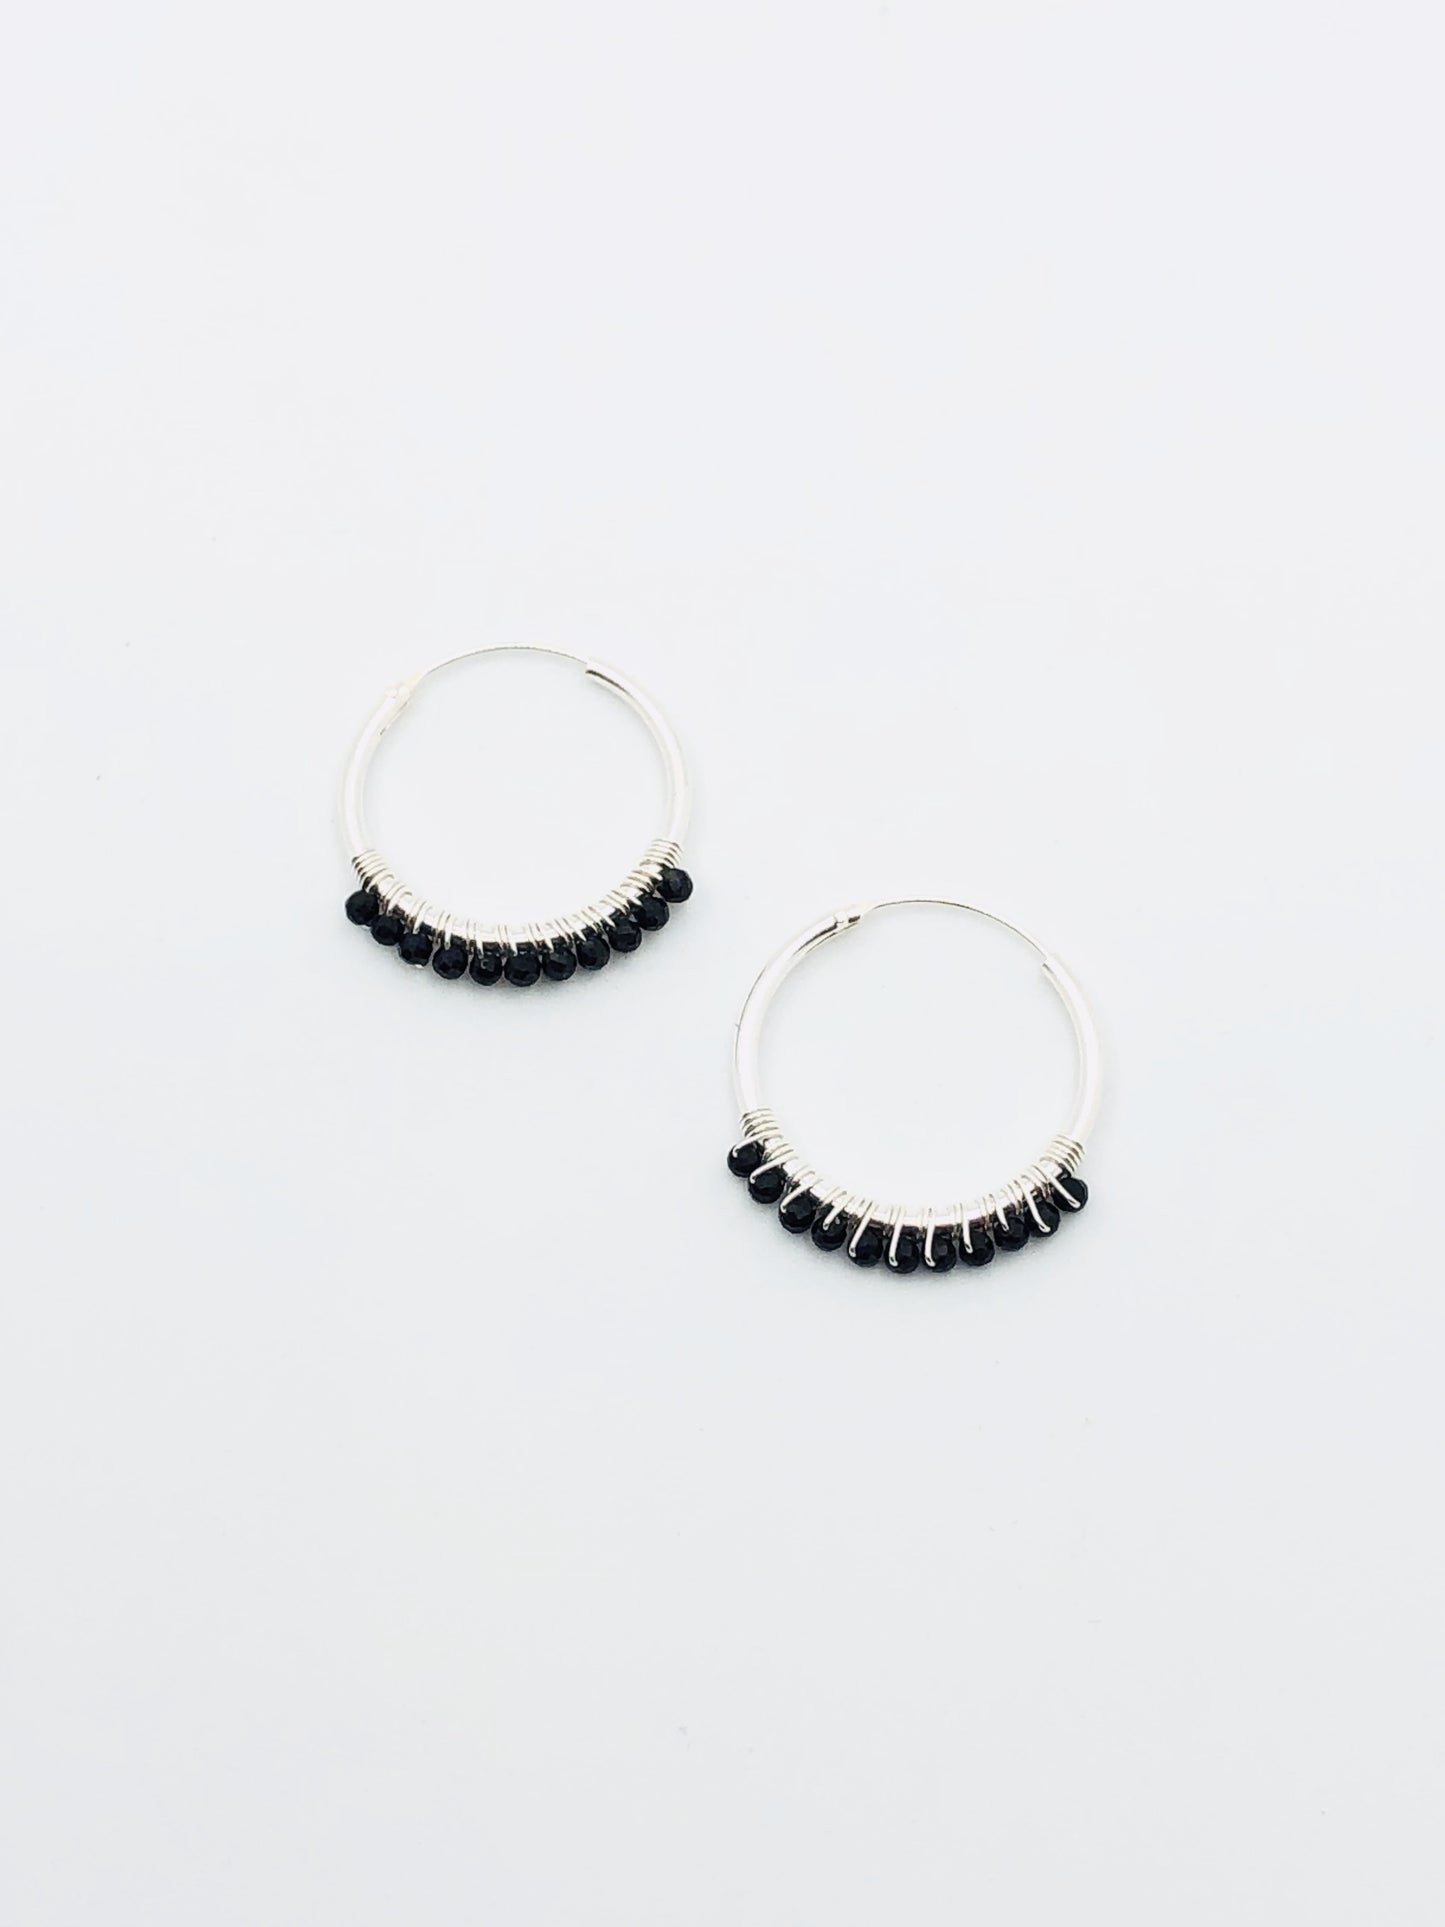 Sterling Silver Earrings - Hoop with Black Onyx